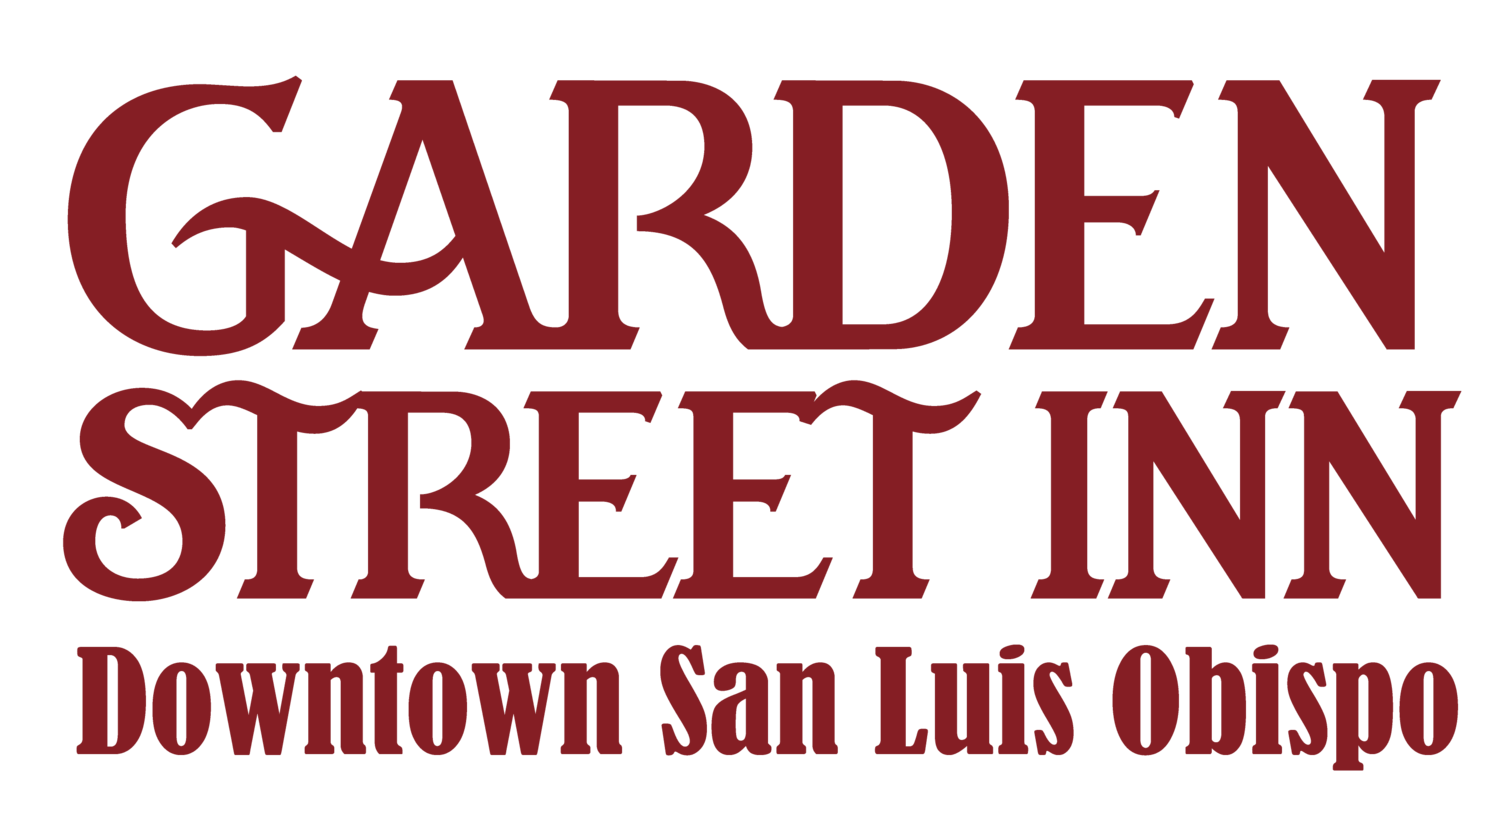 San Luis Obispo Garden Street Inn